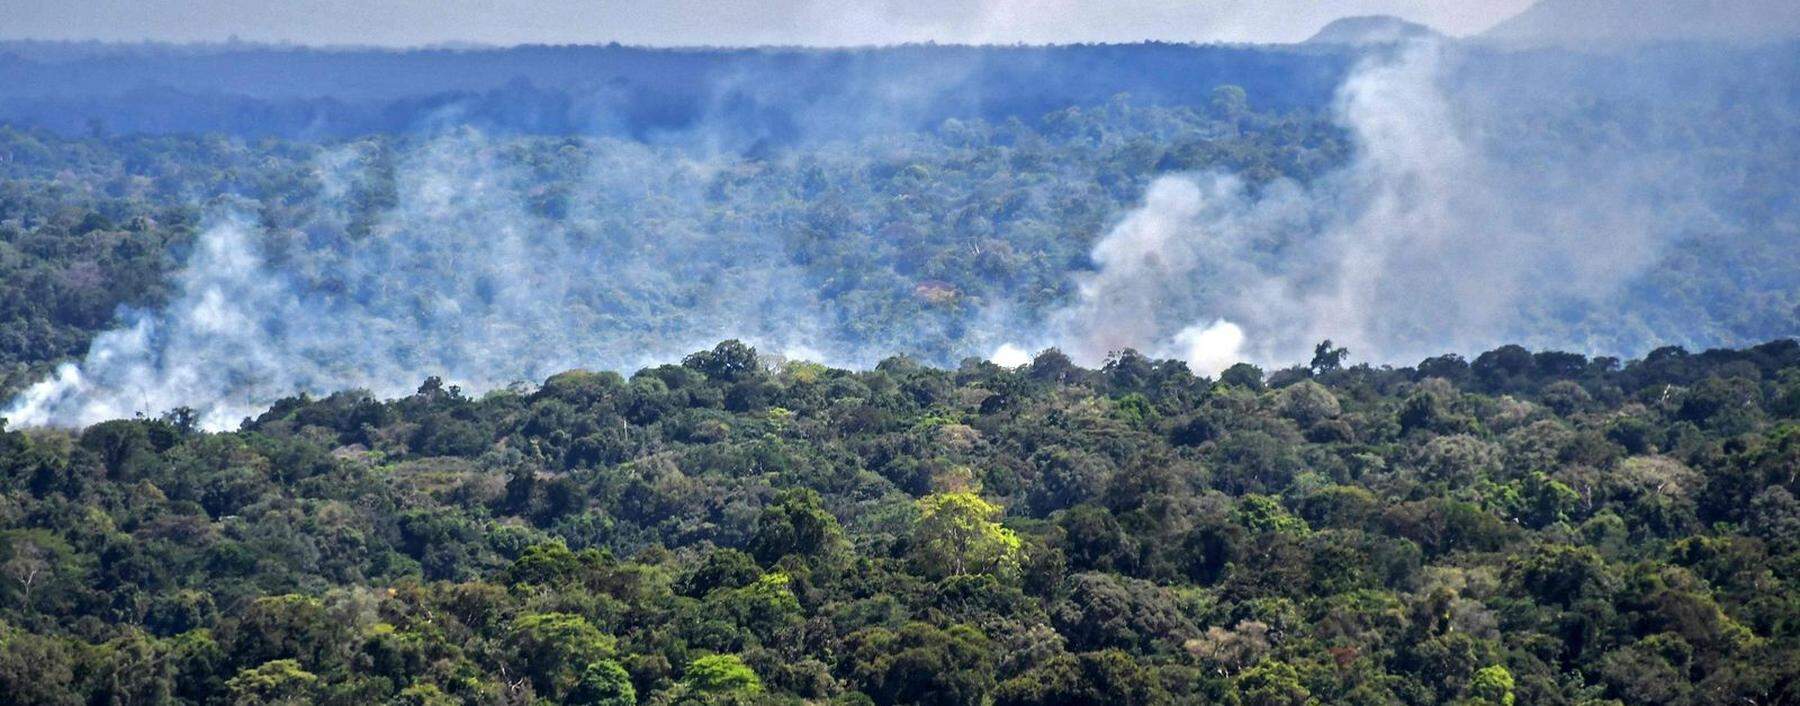 Rauch im Urwald des brasilianischen Amazonasstaates Amapá, Bild vom Vorjahr.